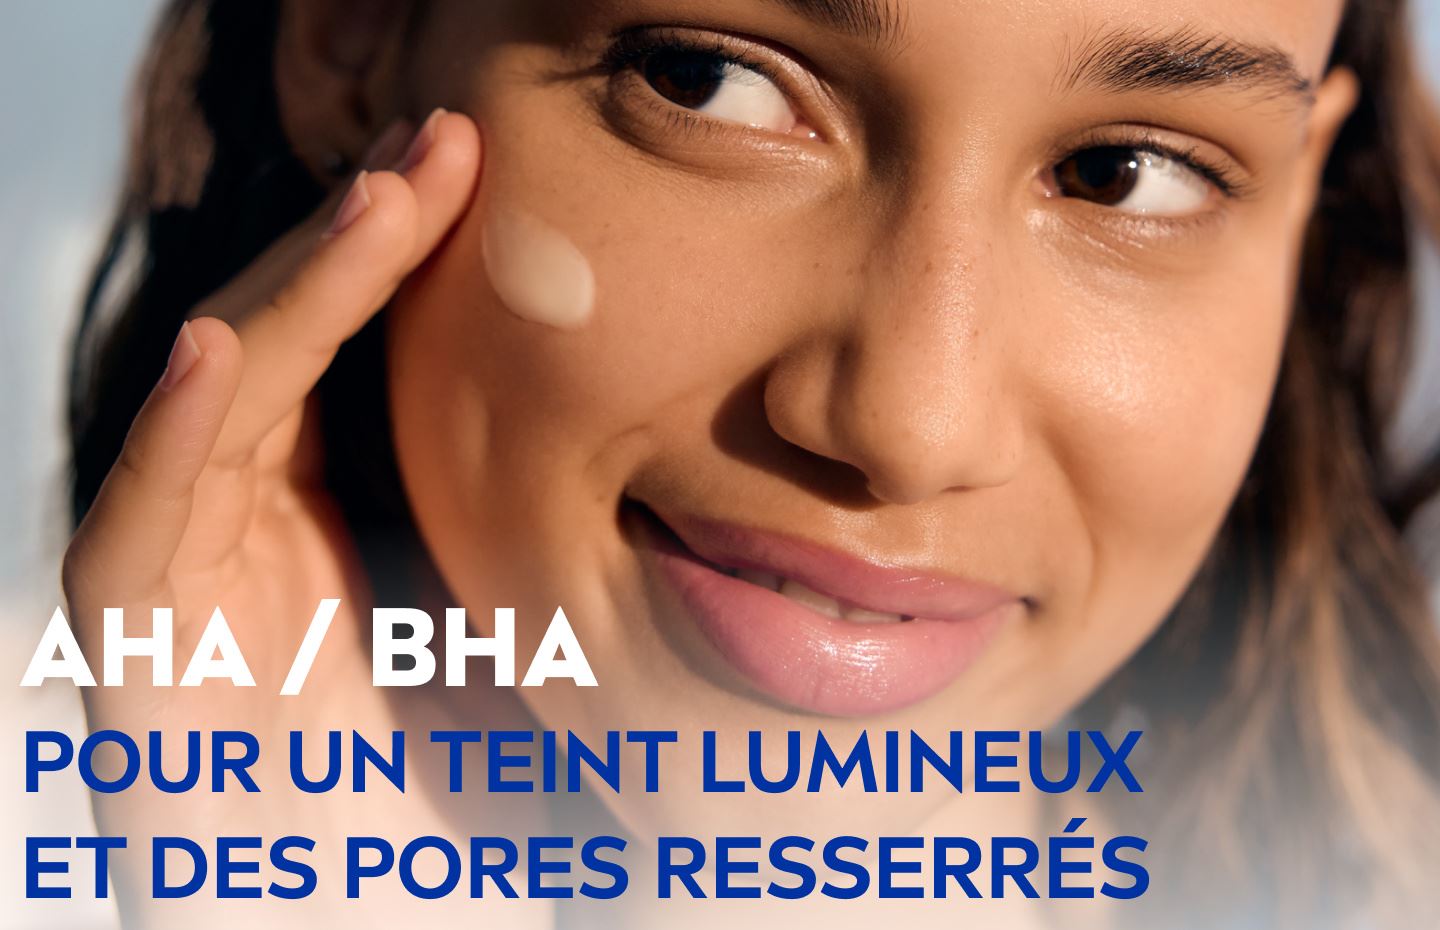 AHA / BHA : Pour un teint lumineux et des pores resserrés